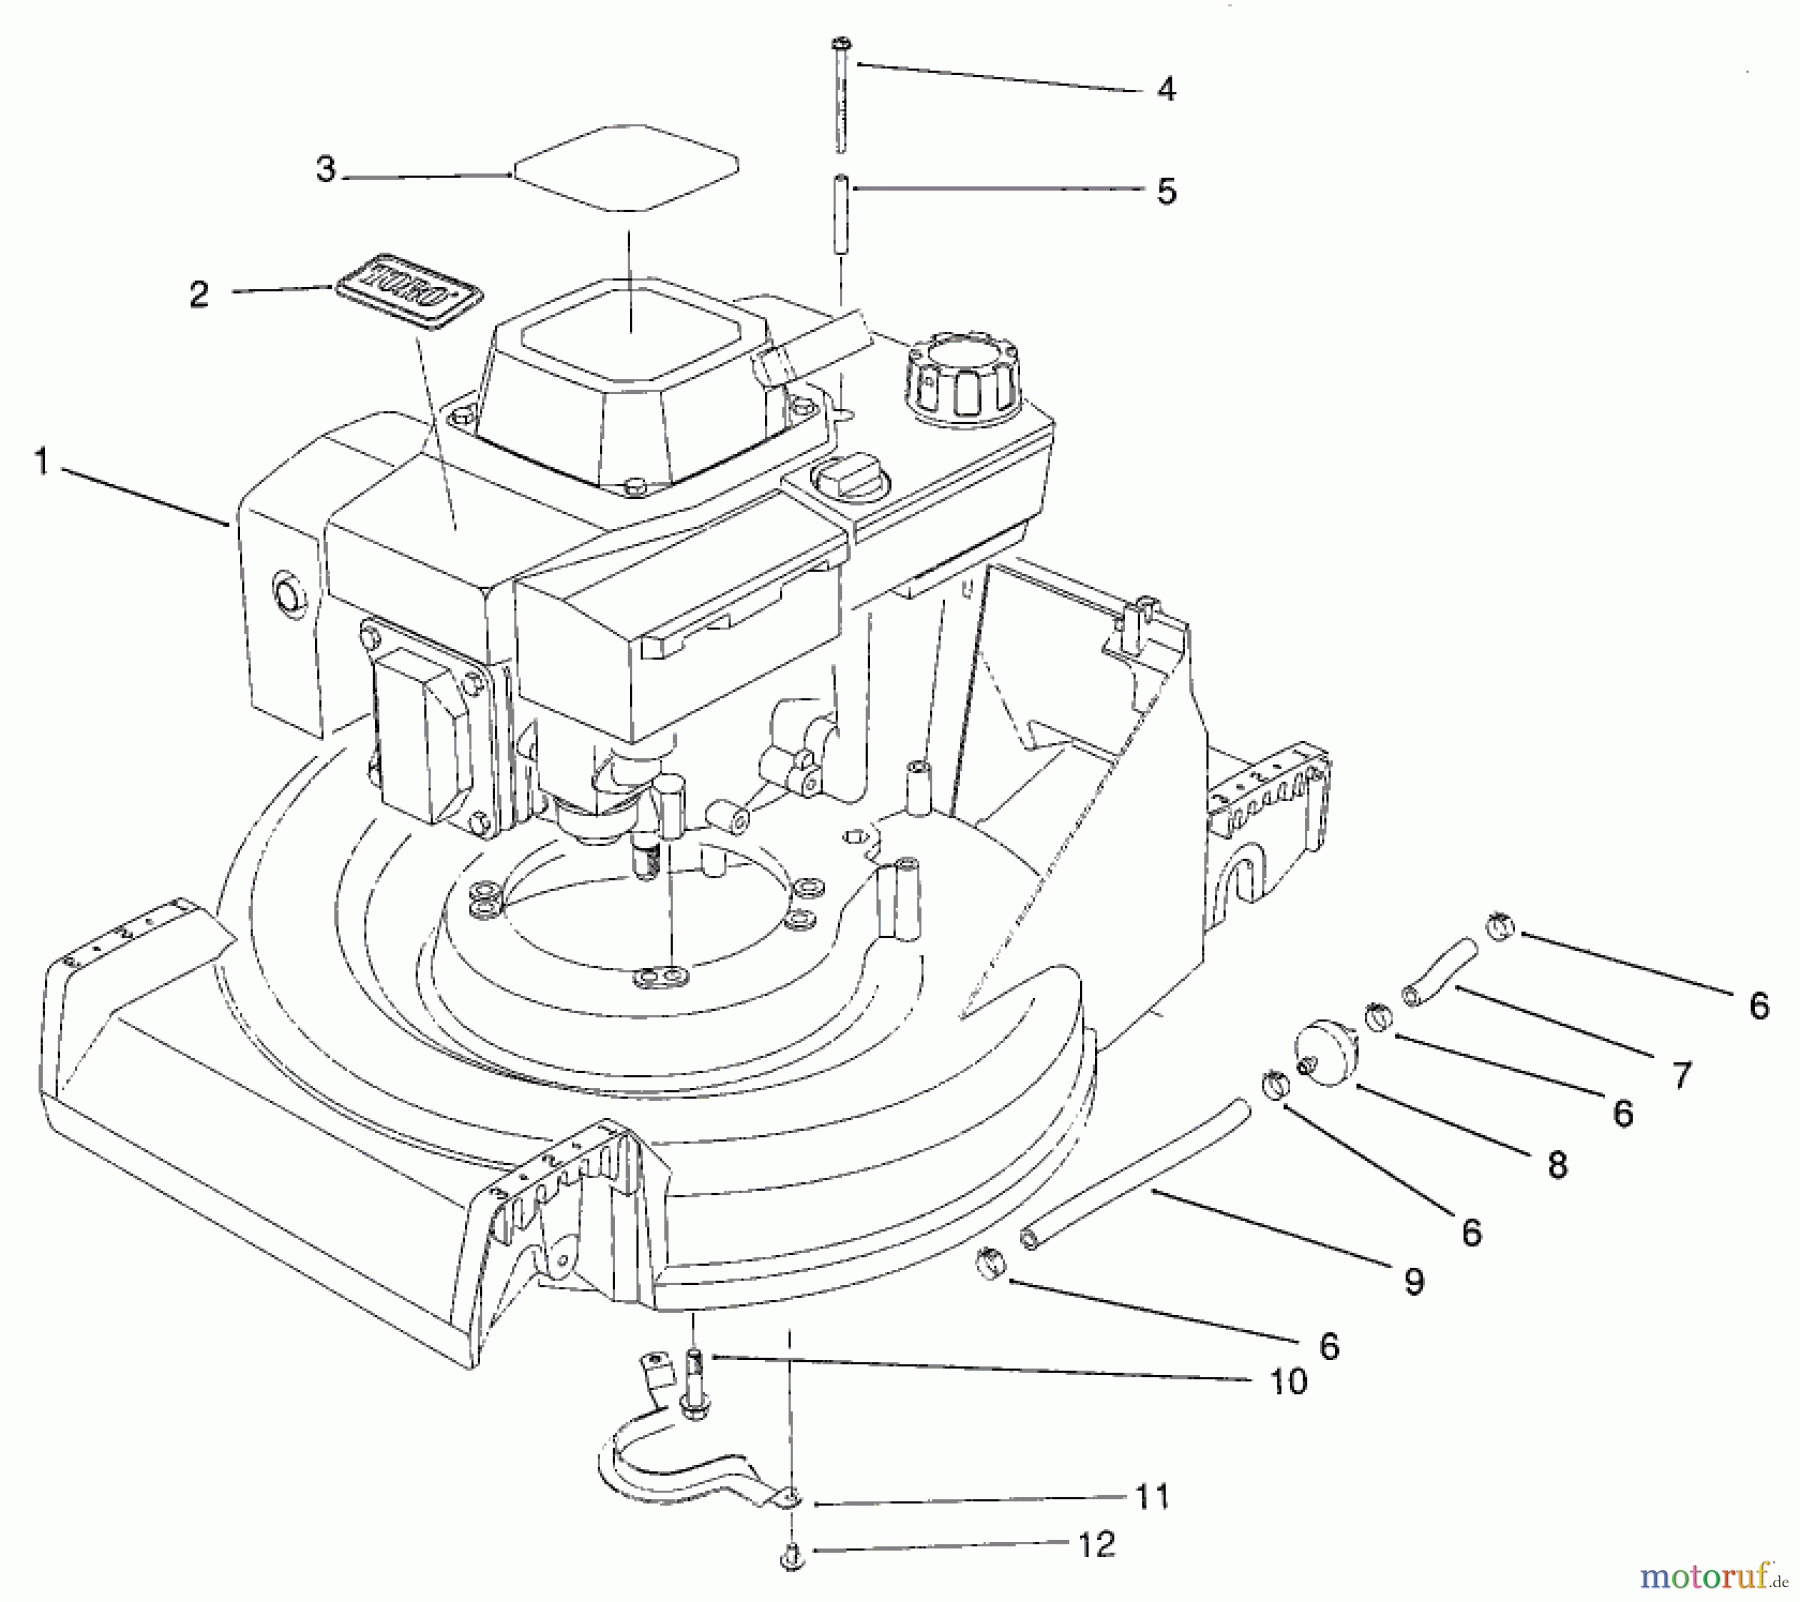  Toro Neu Mowers, Walk-Behind Seite 2 22623 - Toro Lawnmower, 1987 (7000001-7999999) ENGINE ASSEMBLY #1